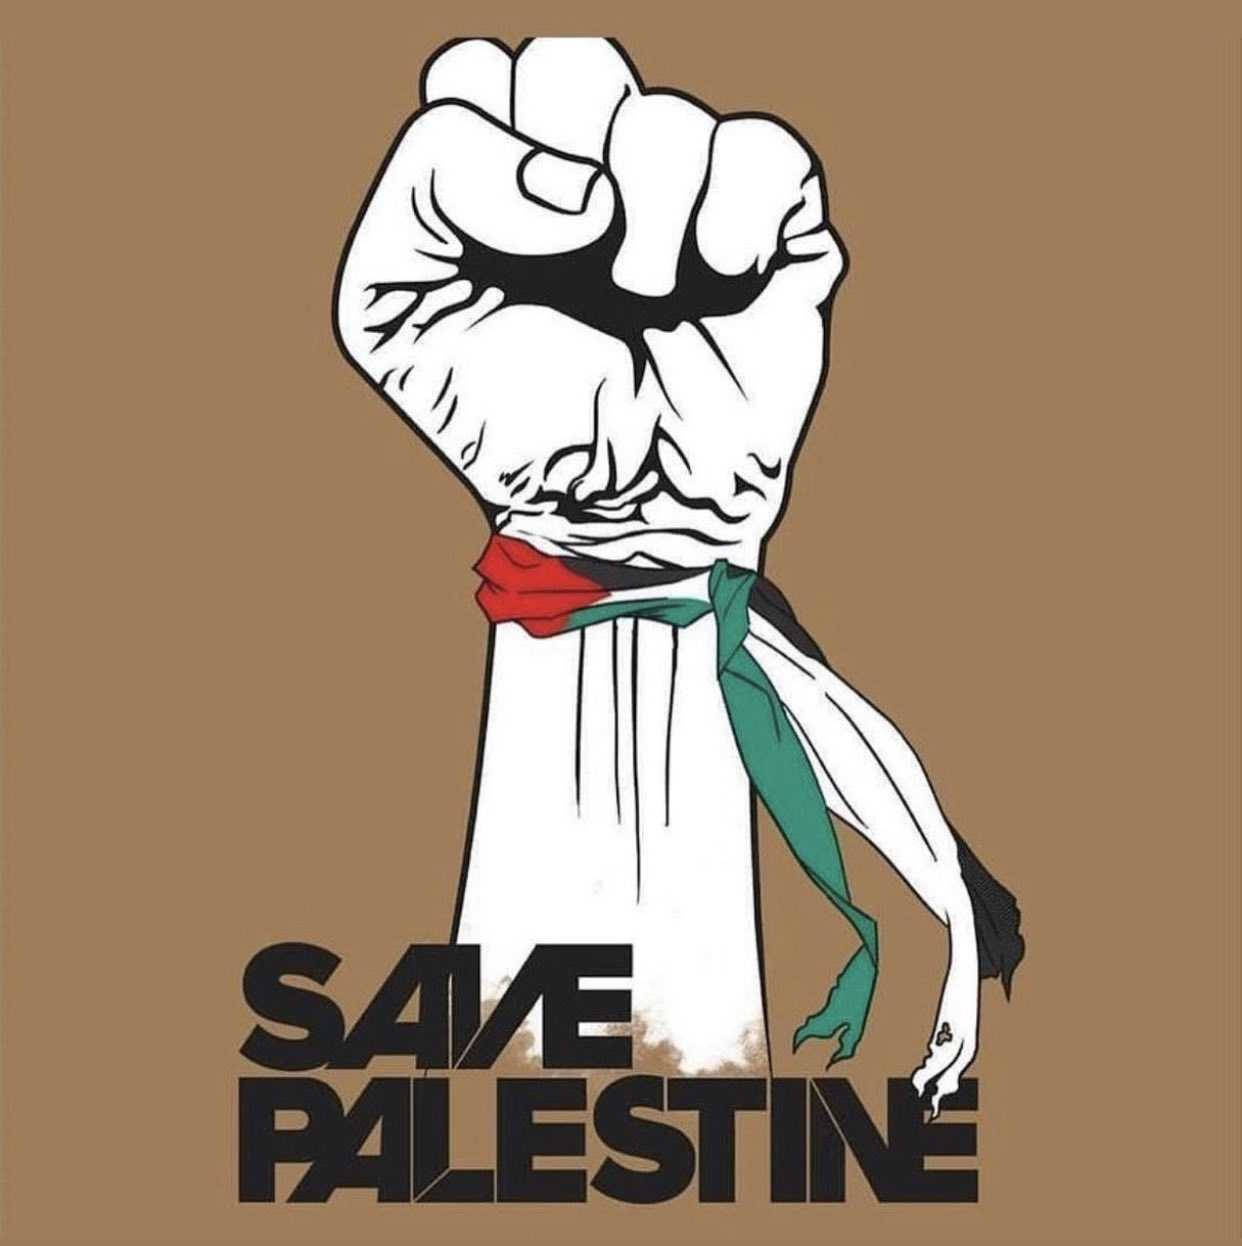 Save Palestine Fist Digital Art Wallpaper